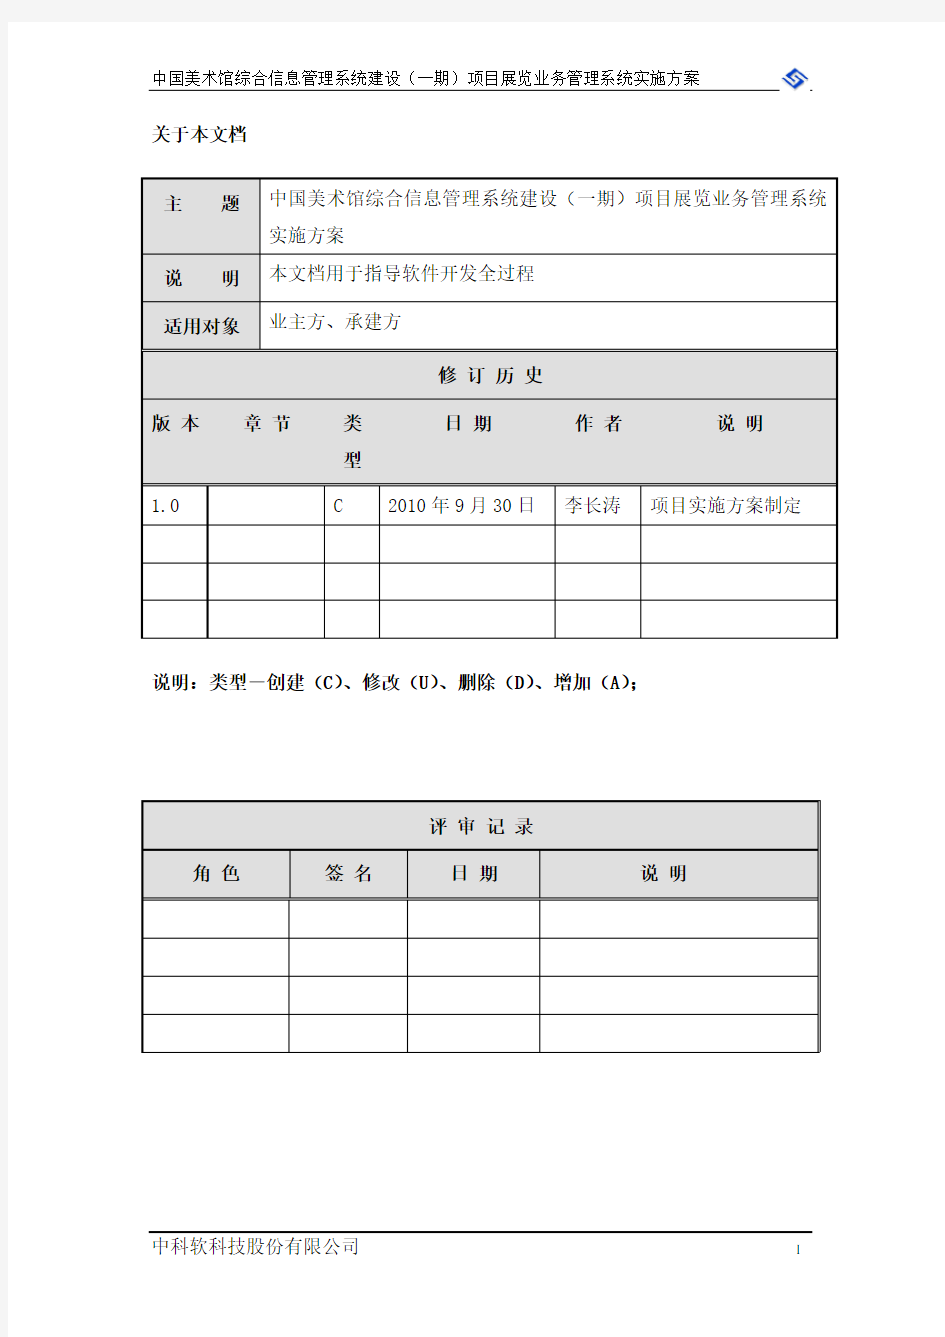 中国美术馆展览业务管理系统实施方案V1.0